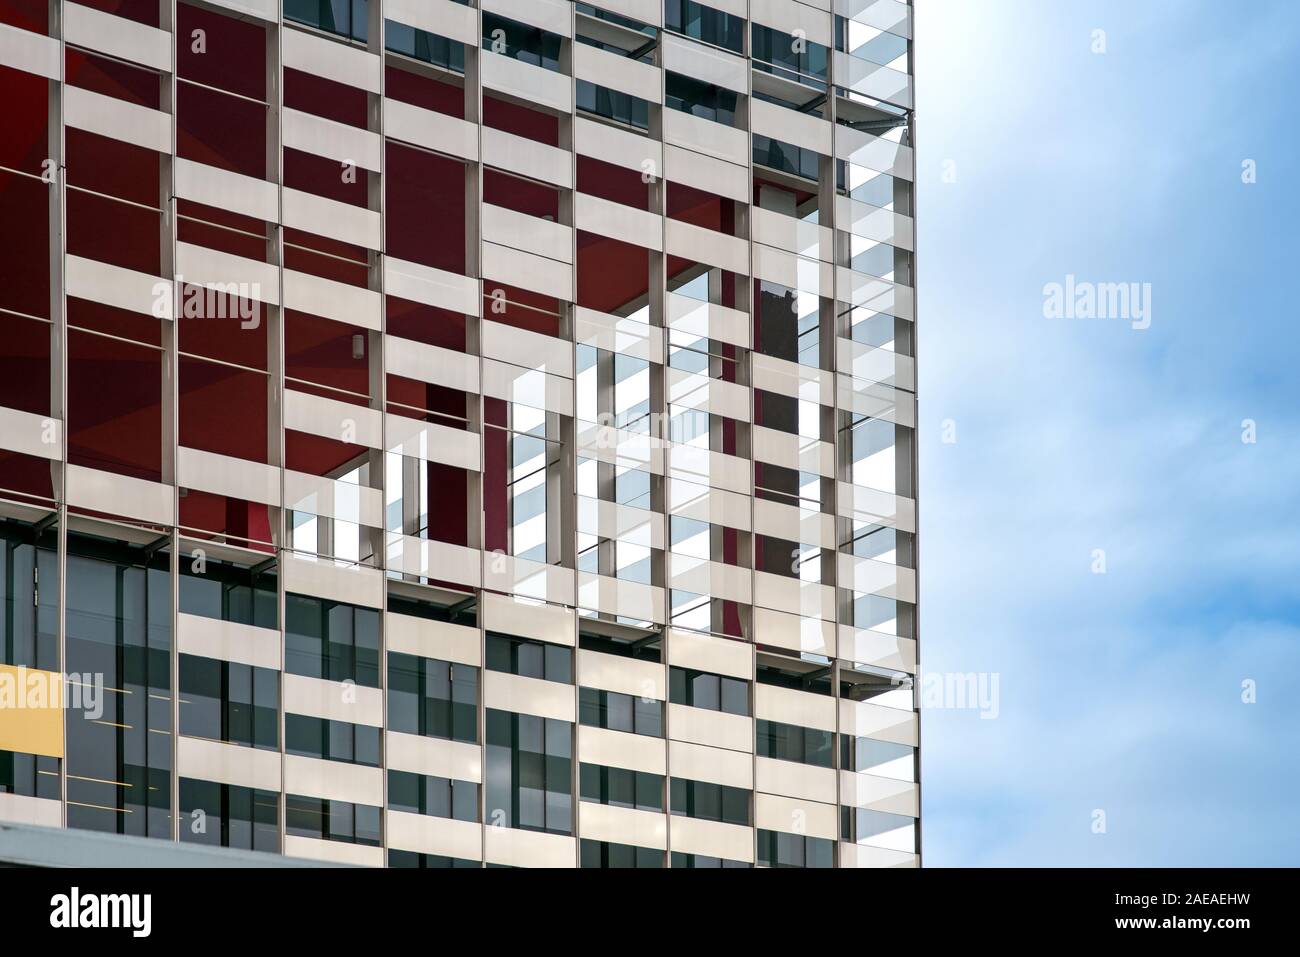 La façade extérieure d'un immeuble de bureaux ou d'appartements moderne en close up detail contre un ciel bleu voilé Banque D'Images